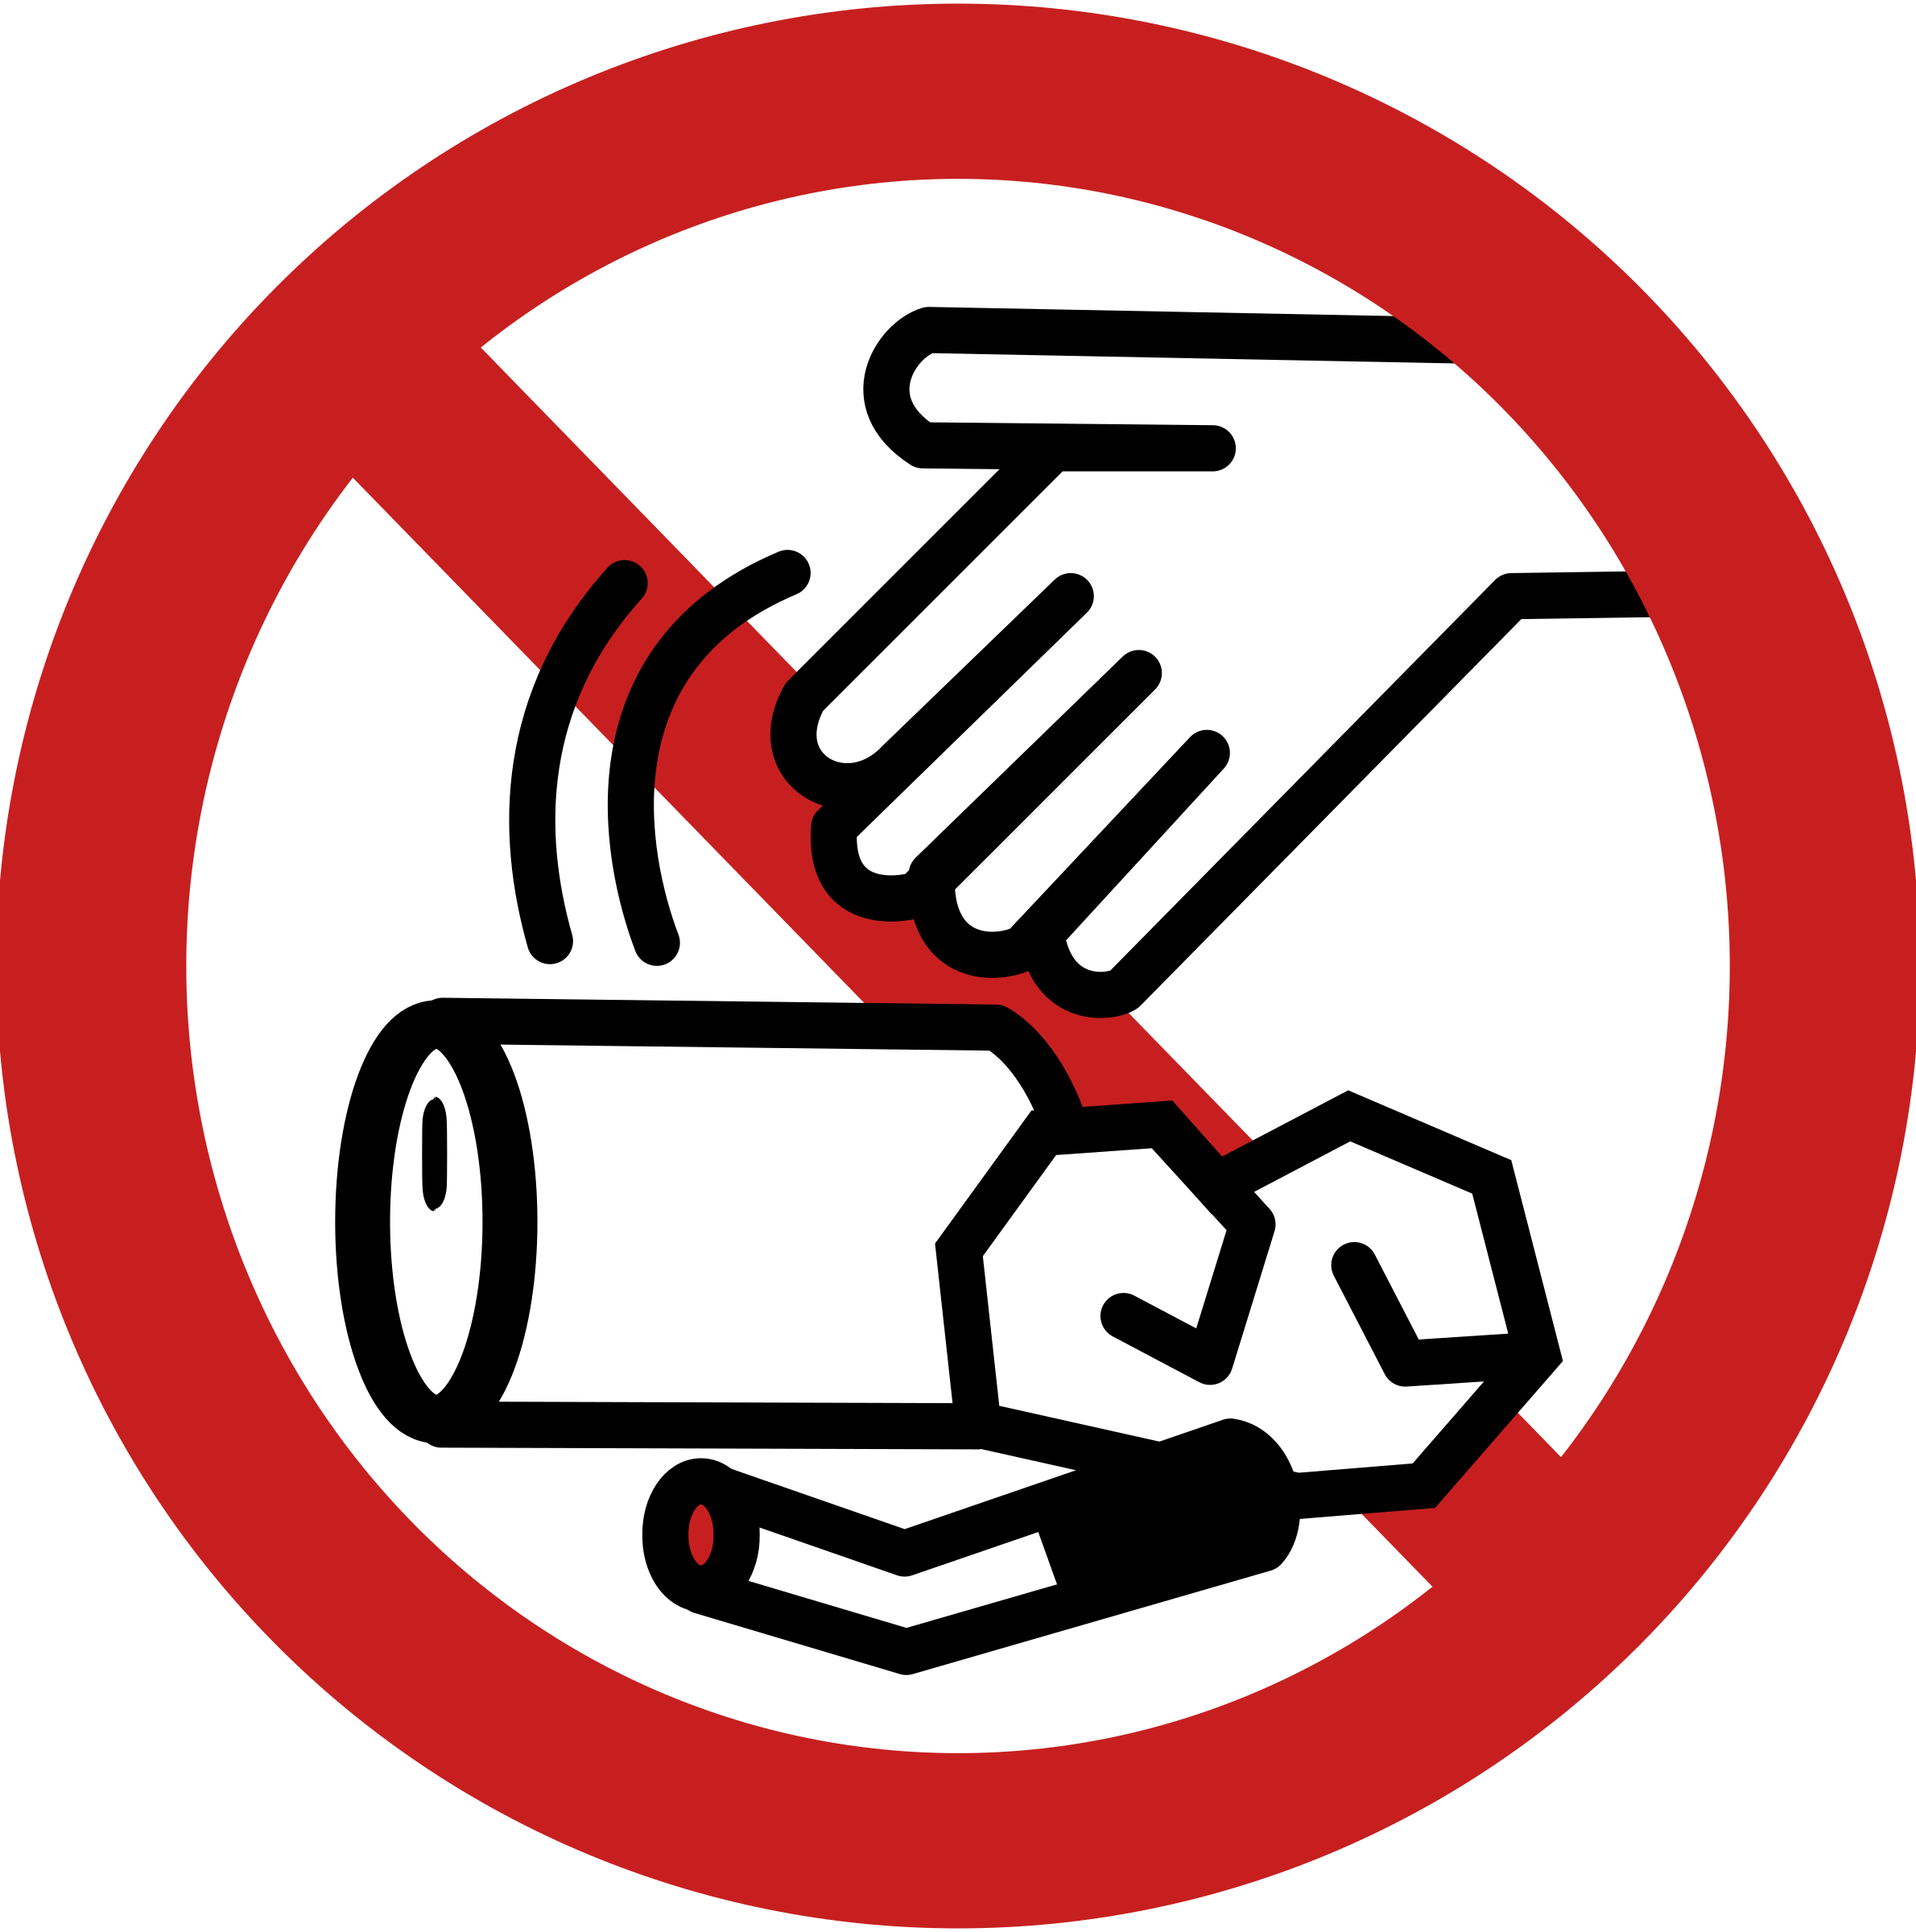 Знак нельзя выбрасывать. Знак «не мусорить». Мусорить запрещено. Знако мусорить запрещено. Знак зарпещающие мусорить.